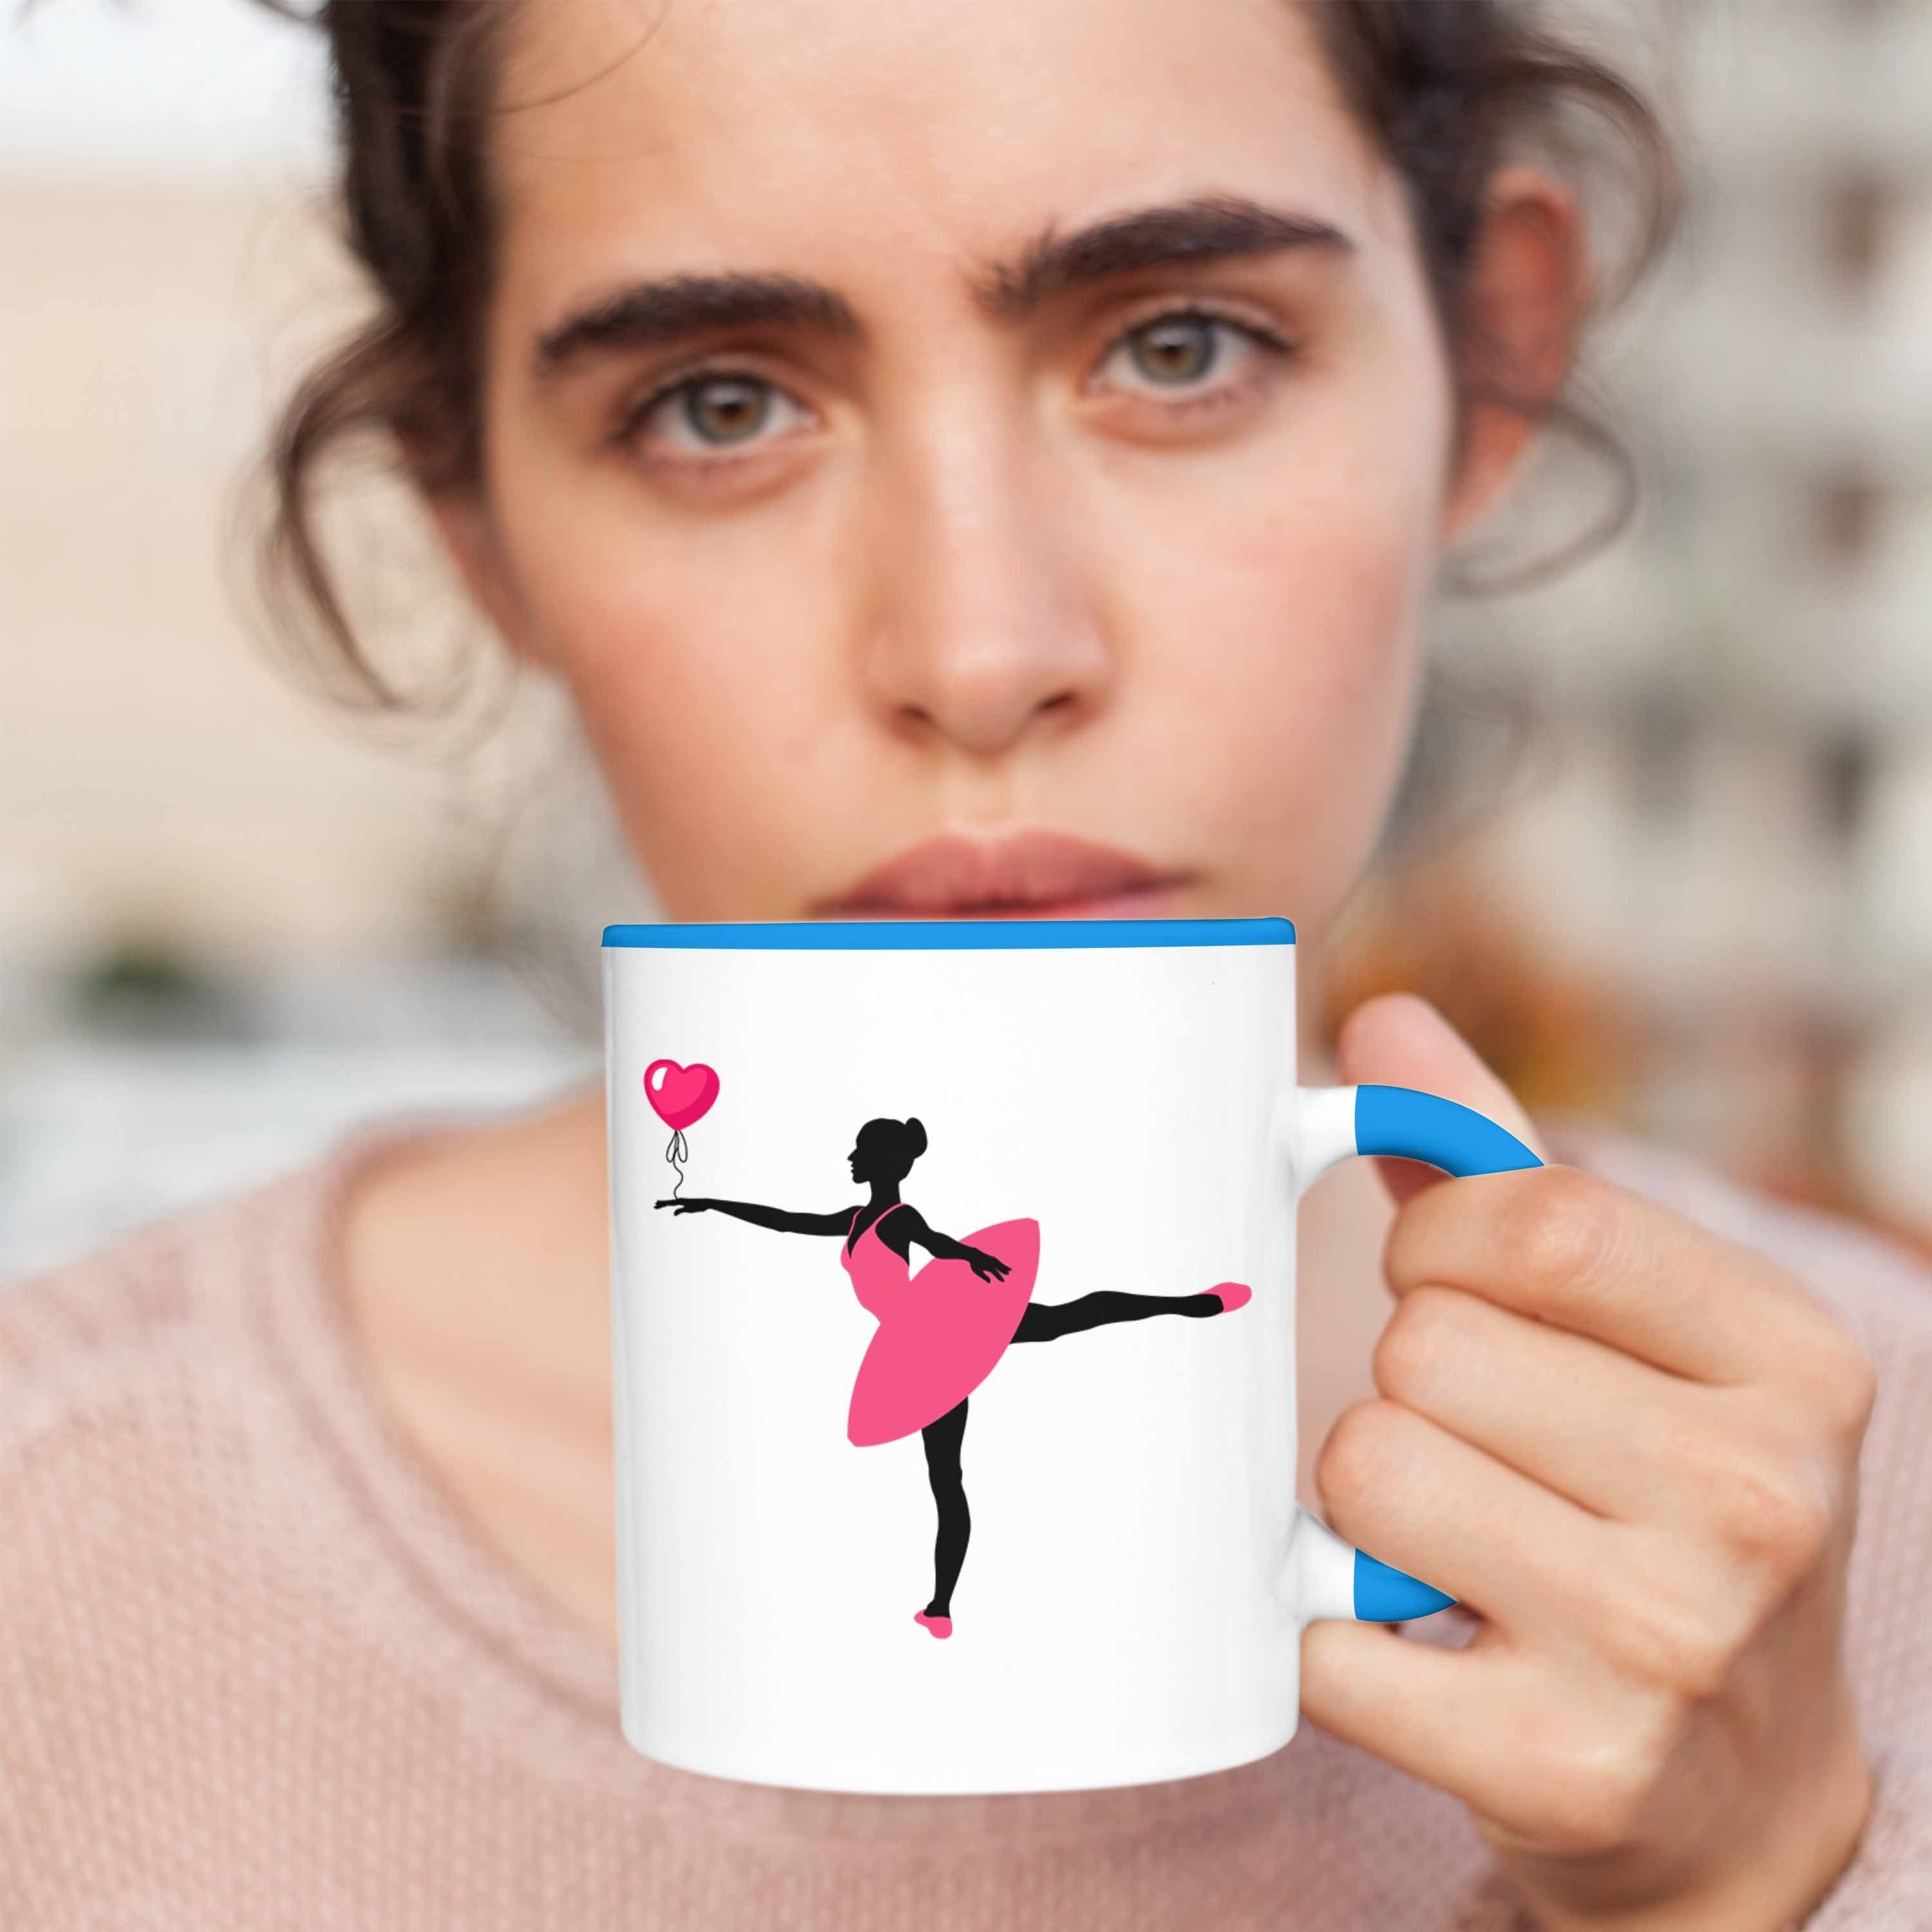 Balett Trendation - Ballett Mädchen Blau Tasse Geschenk Ballerina Frauen Trendation Lehrer Kaffeetasse Tasse Geschenkidee